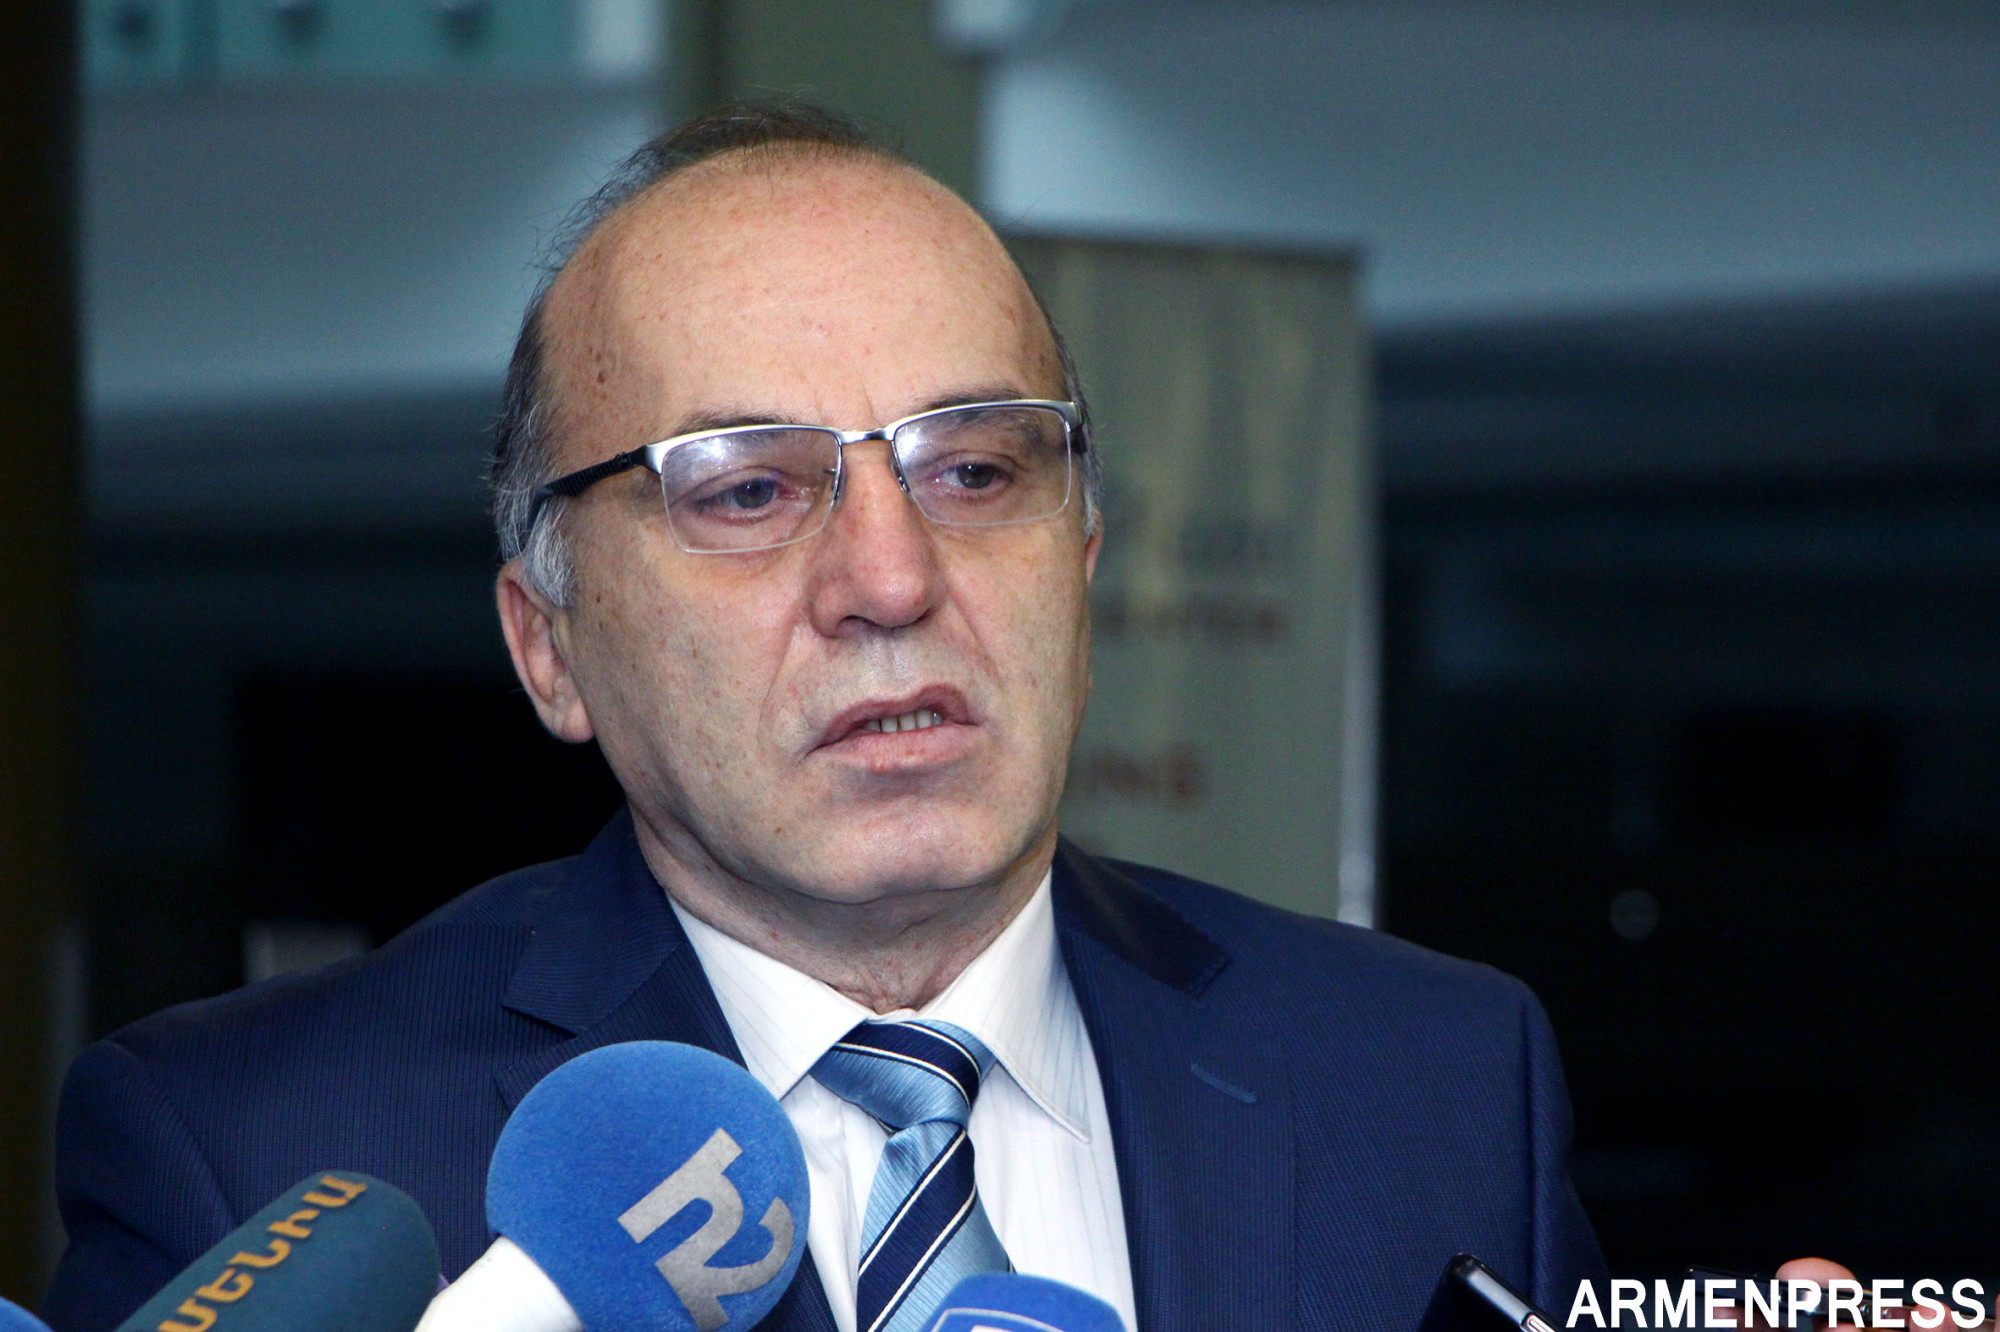 Членство в ЕАЭС способствует улучшению экономики Армении - Татул Манасерян